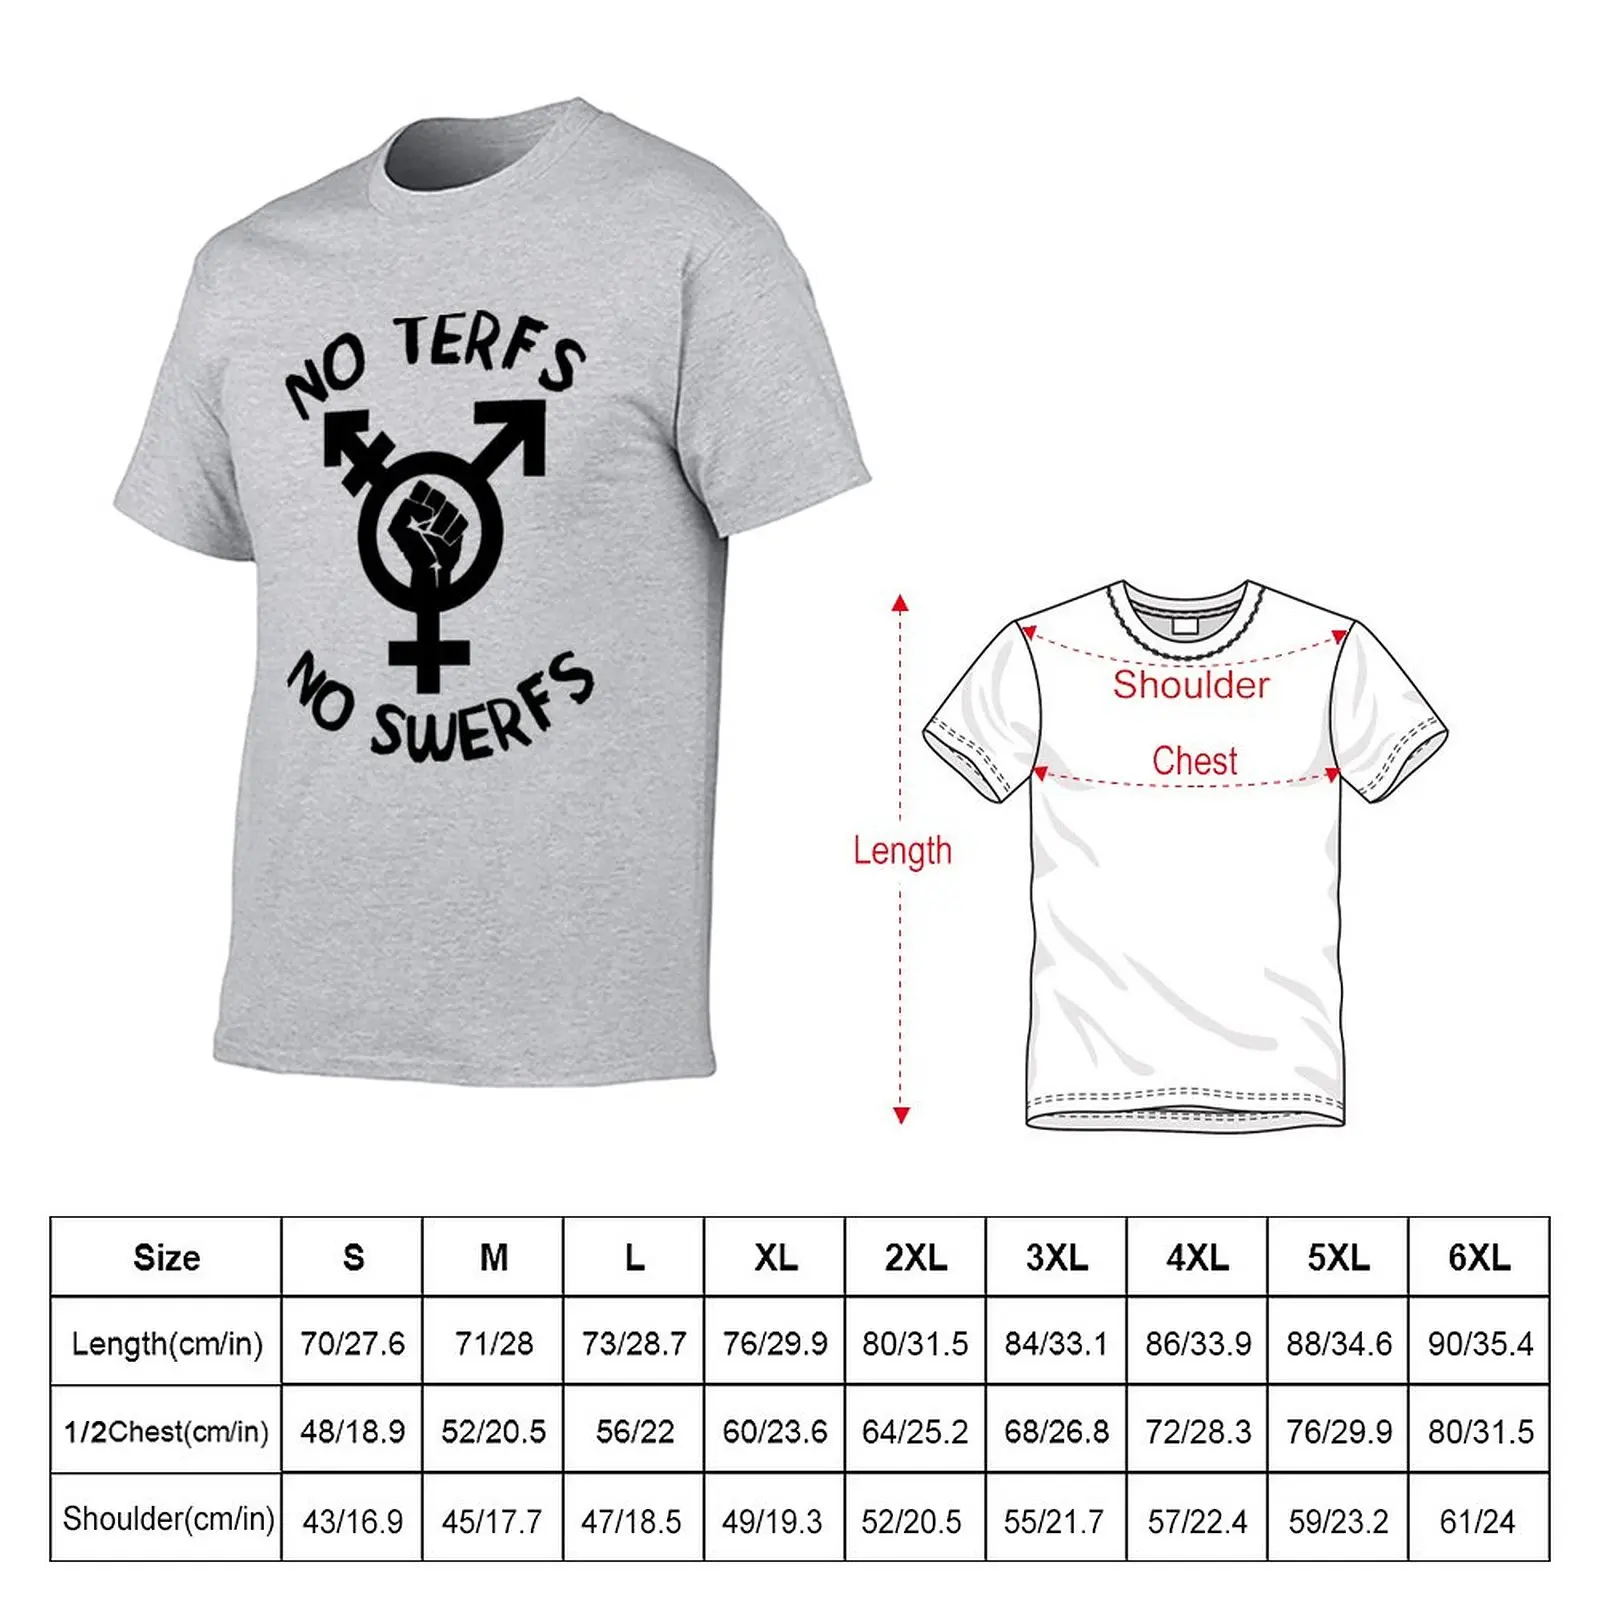 Новые футболки No TERFs No SWERFs - ЛГБТК Трансгендерные Секс-работники, Блузки, футболки, простые футболки, Мужские футболки Изображение 1